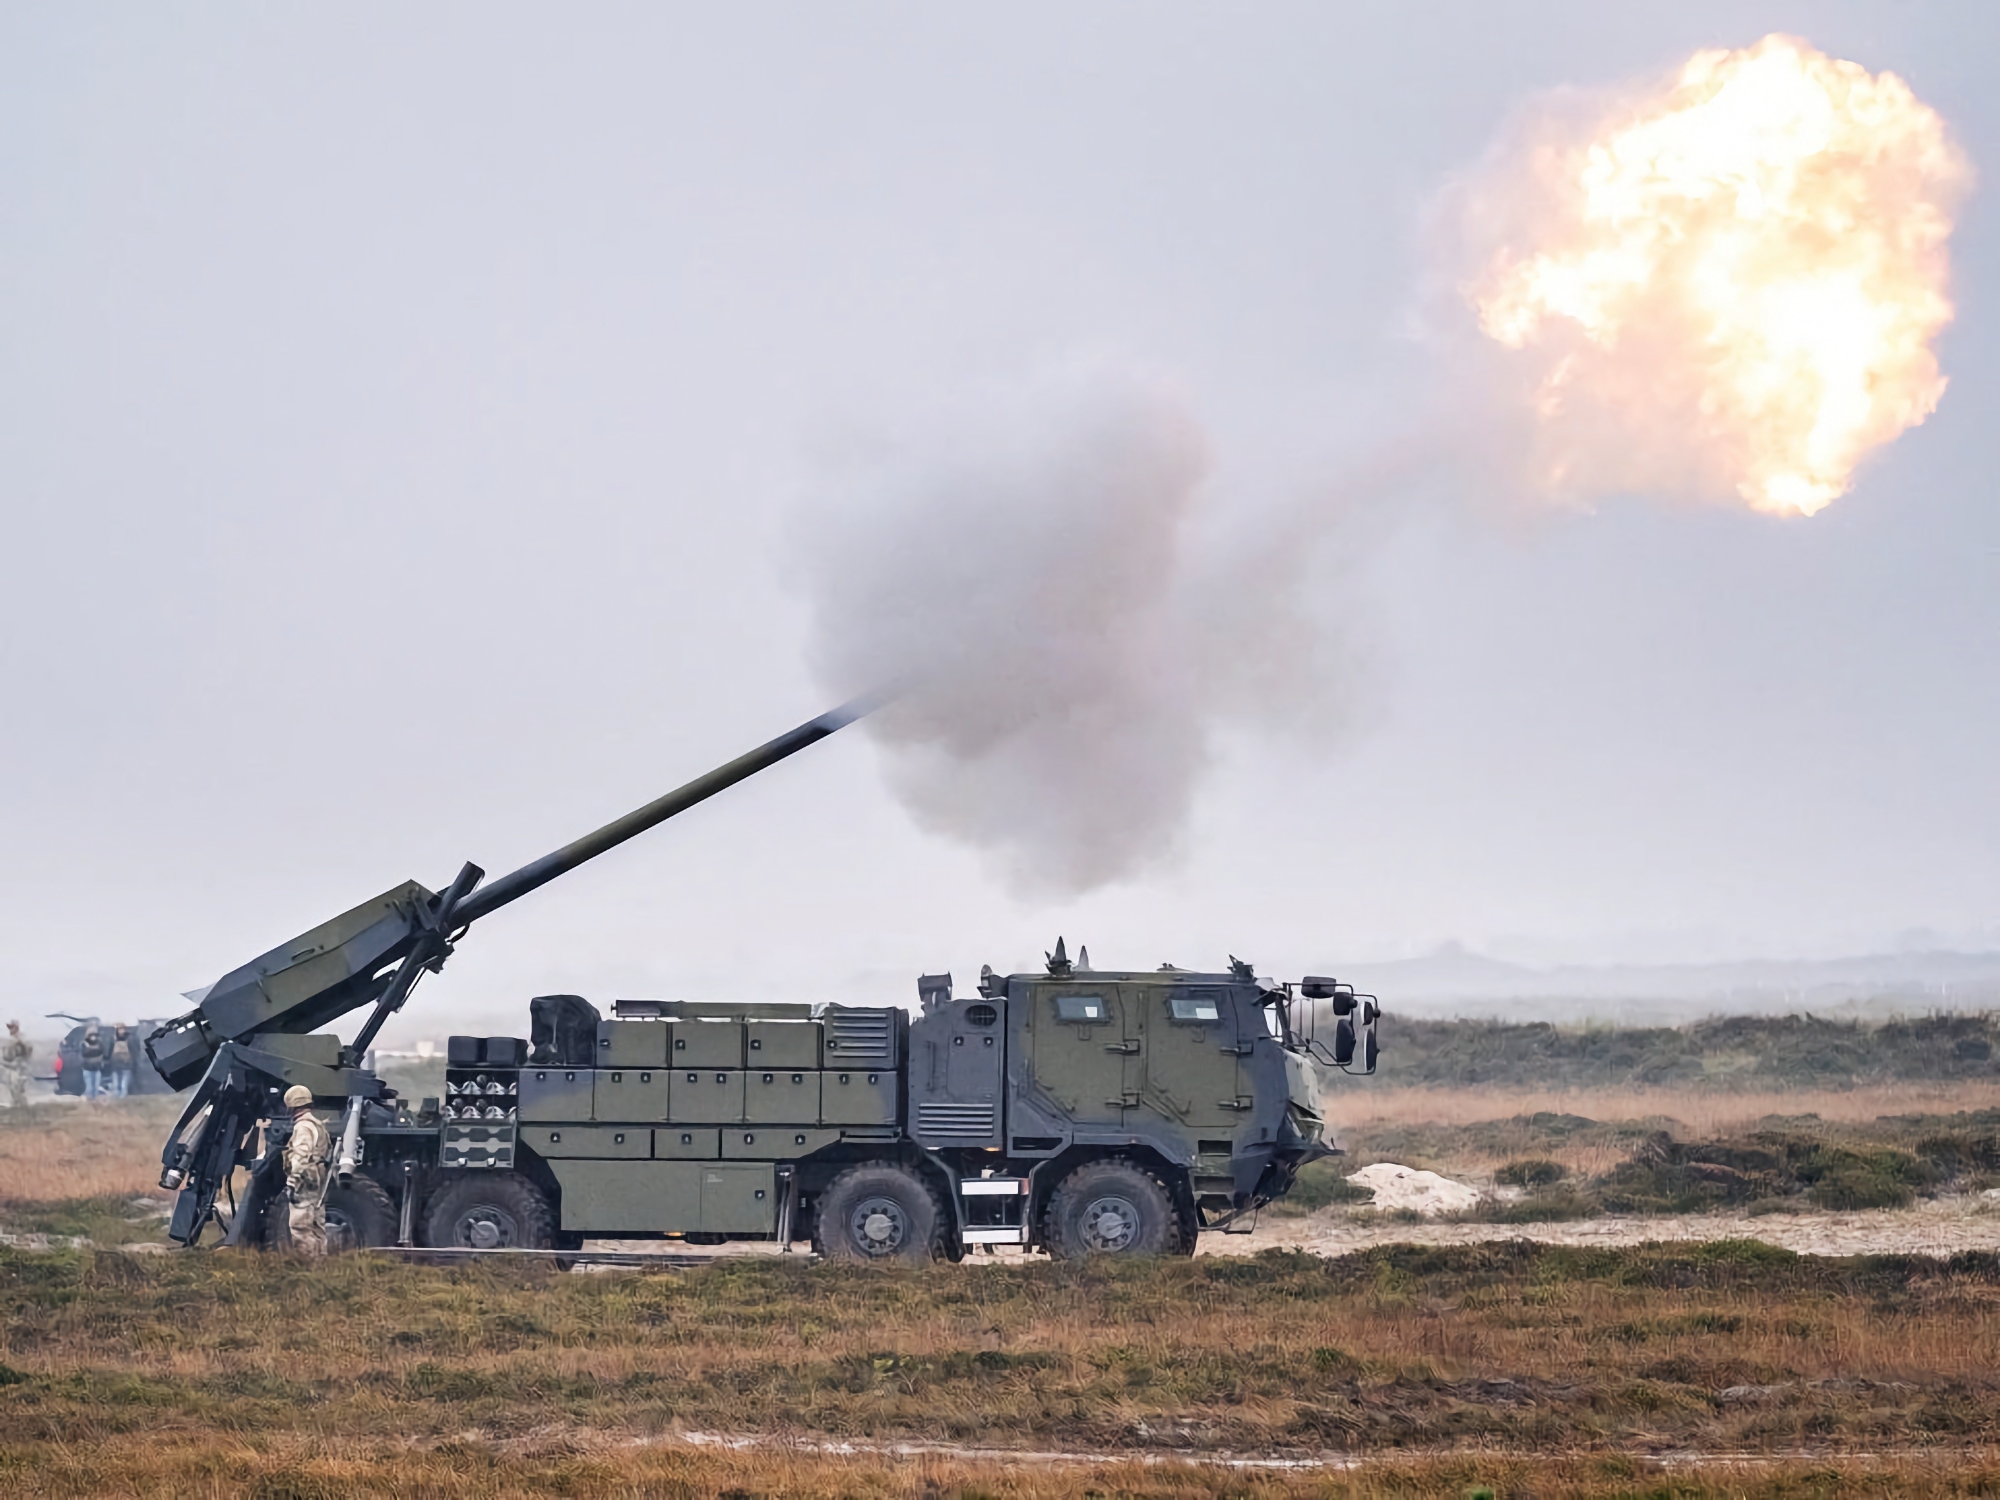 Ukrainisches Militär schließt Trainingsprogramm für Caesar-Haubitzen in Dänemark ab, Waffenlieferungen sollen in Kürze beginnen